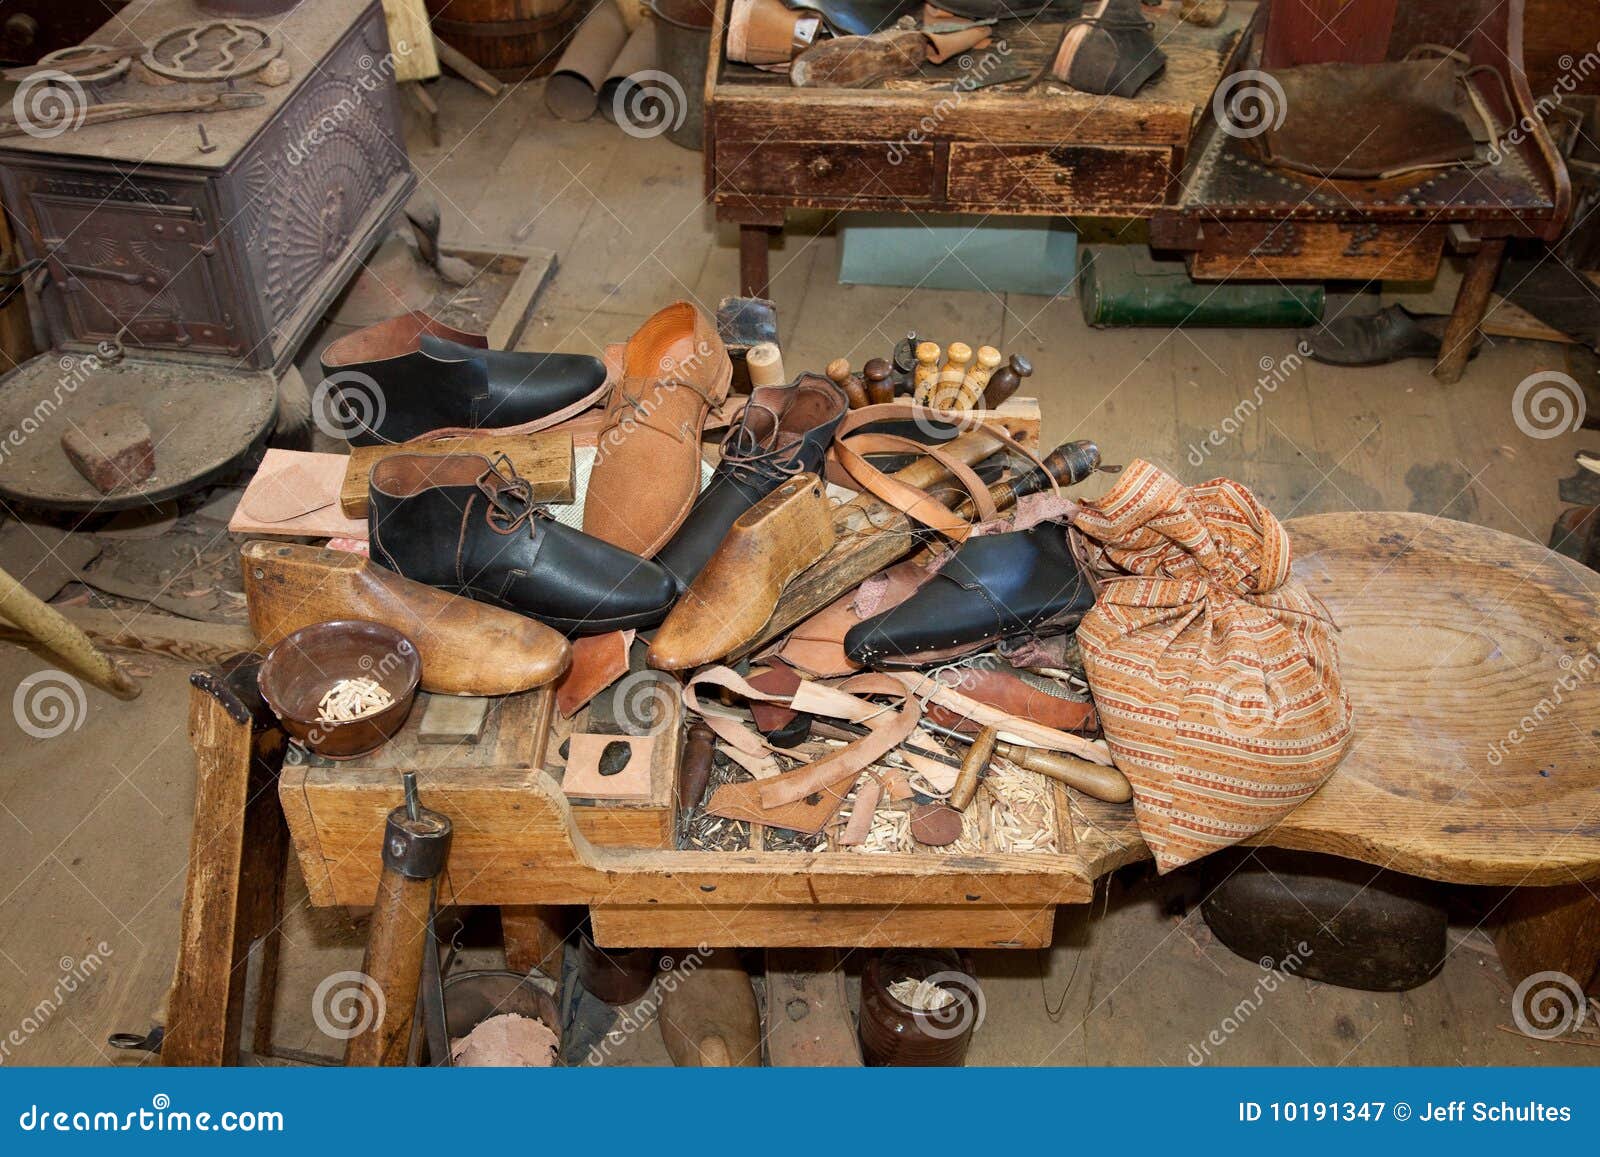 boot repair shop